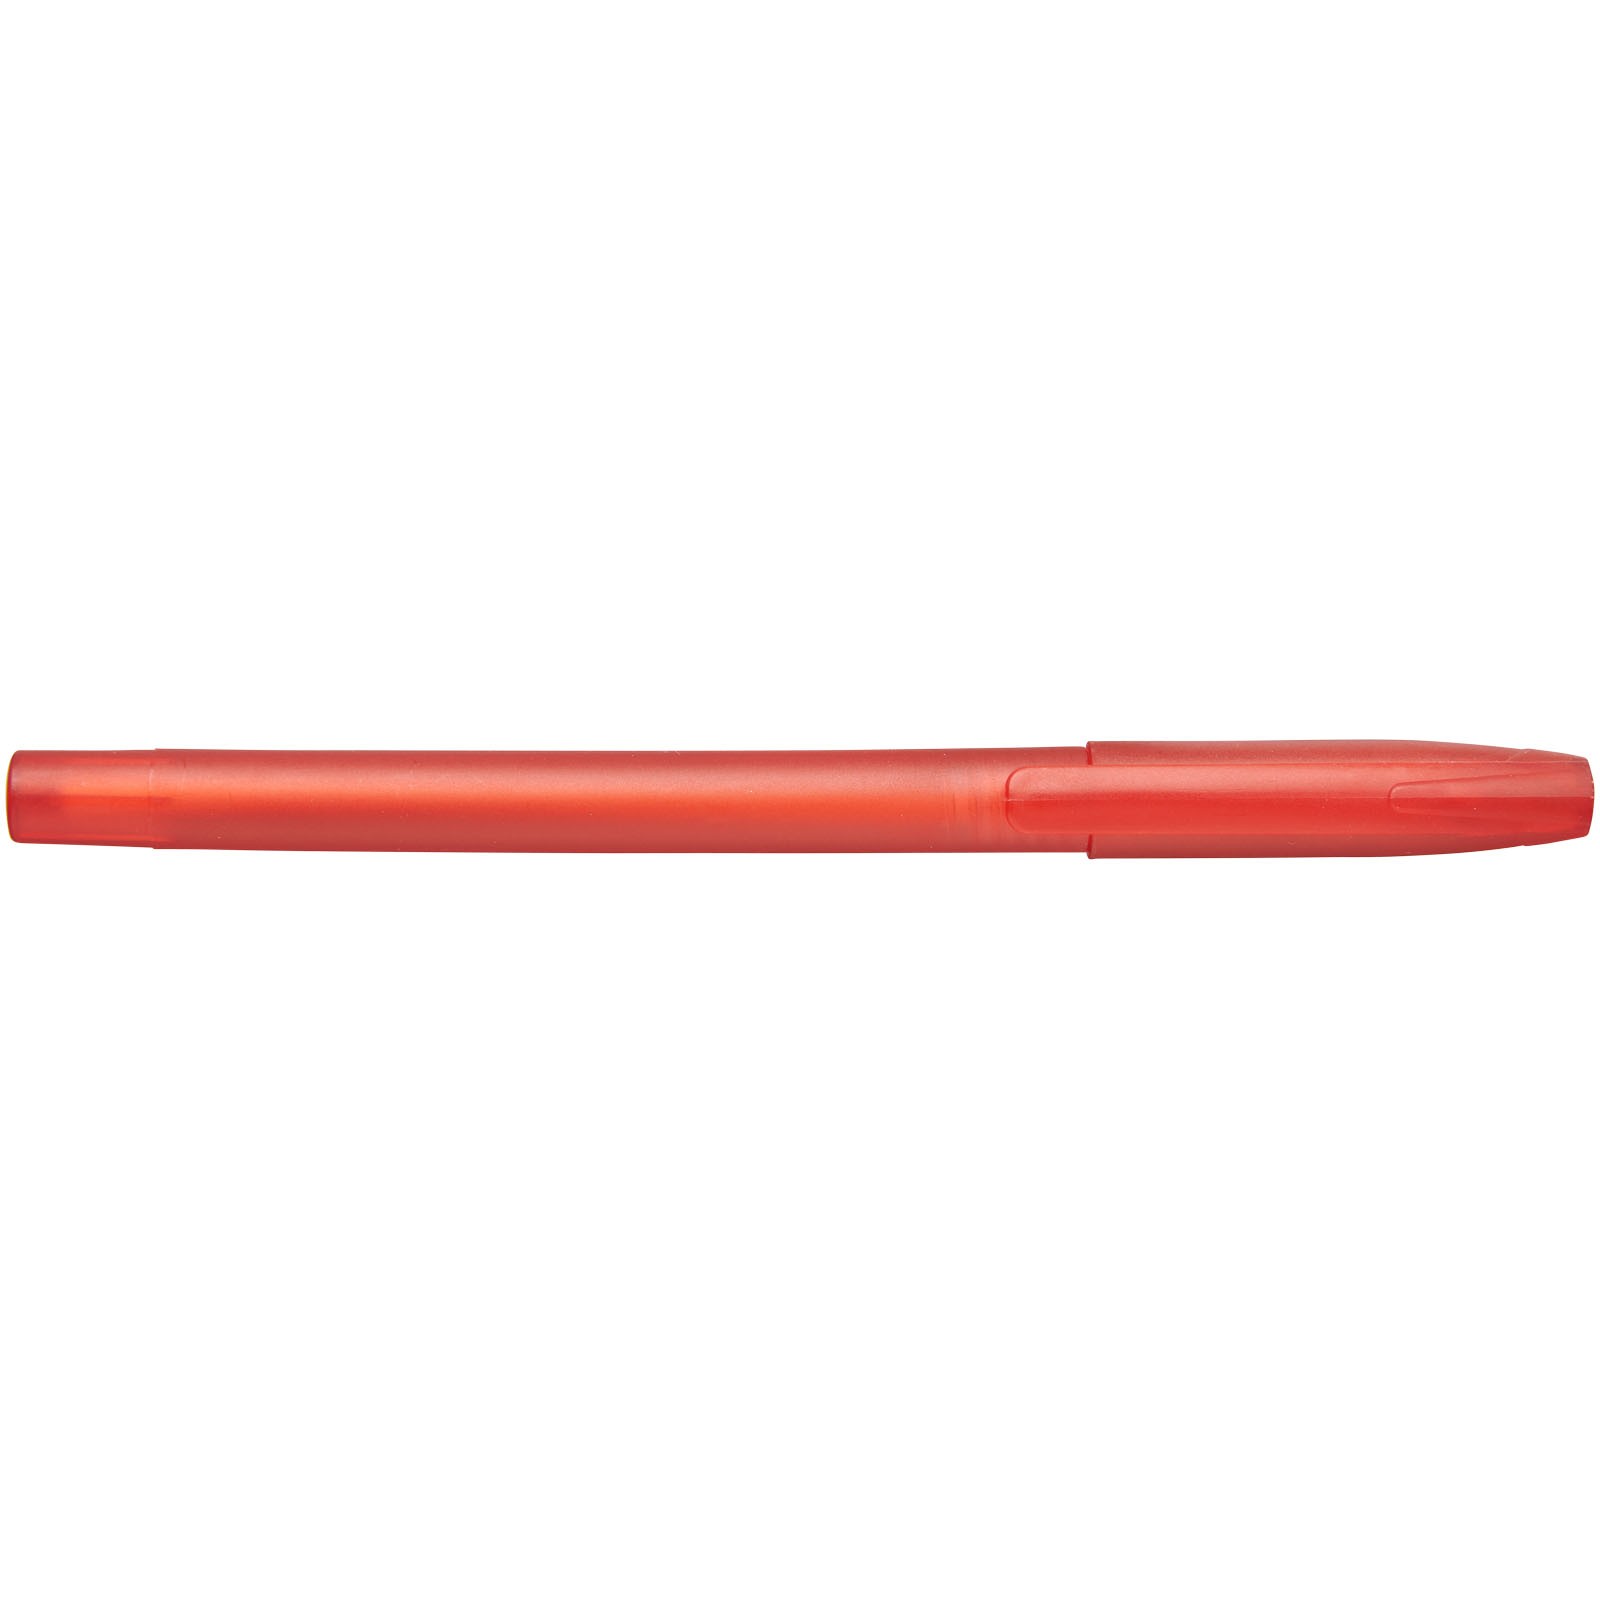 Barrio ballpoint pen - Red